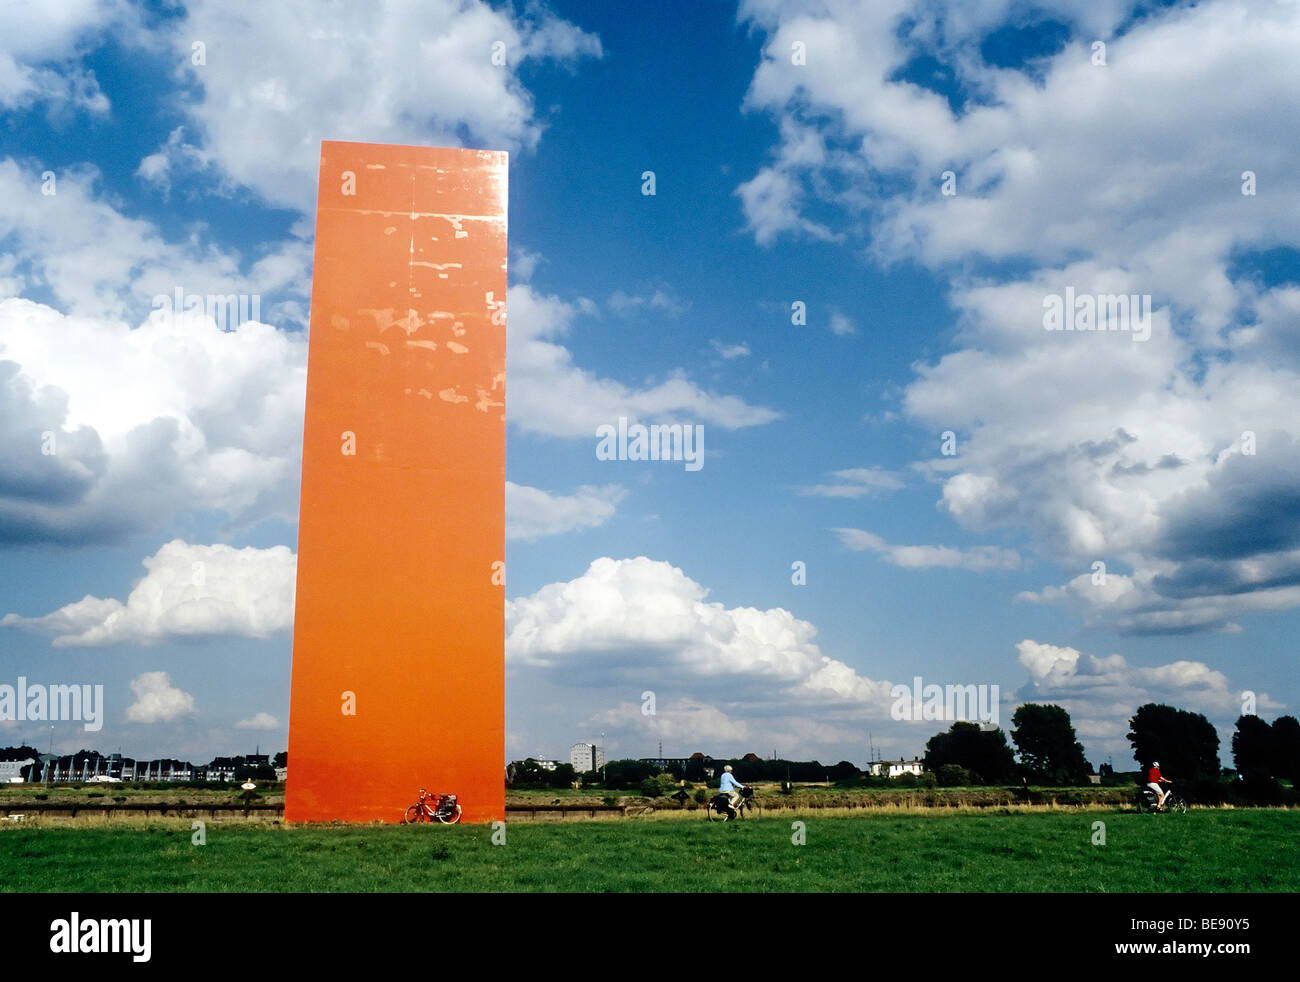 Landmark Rheinorange, Rhine Orange by Lutz Frisch, monumental orange stele at the mouth of the Ruhr river, Duisburg-Ruhrort, Ru Stock Photo